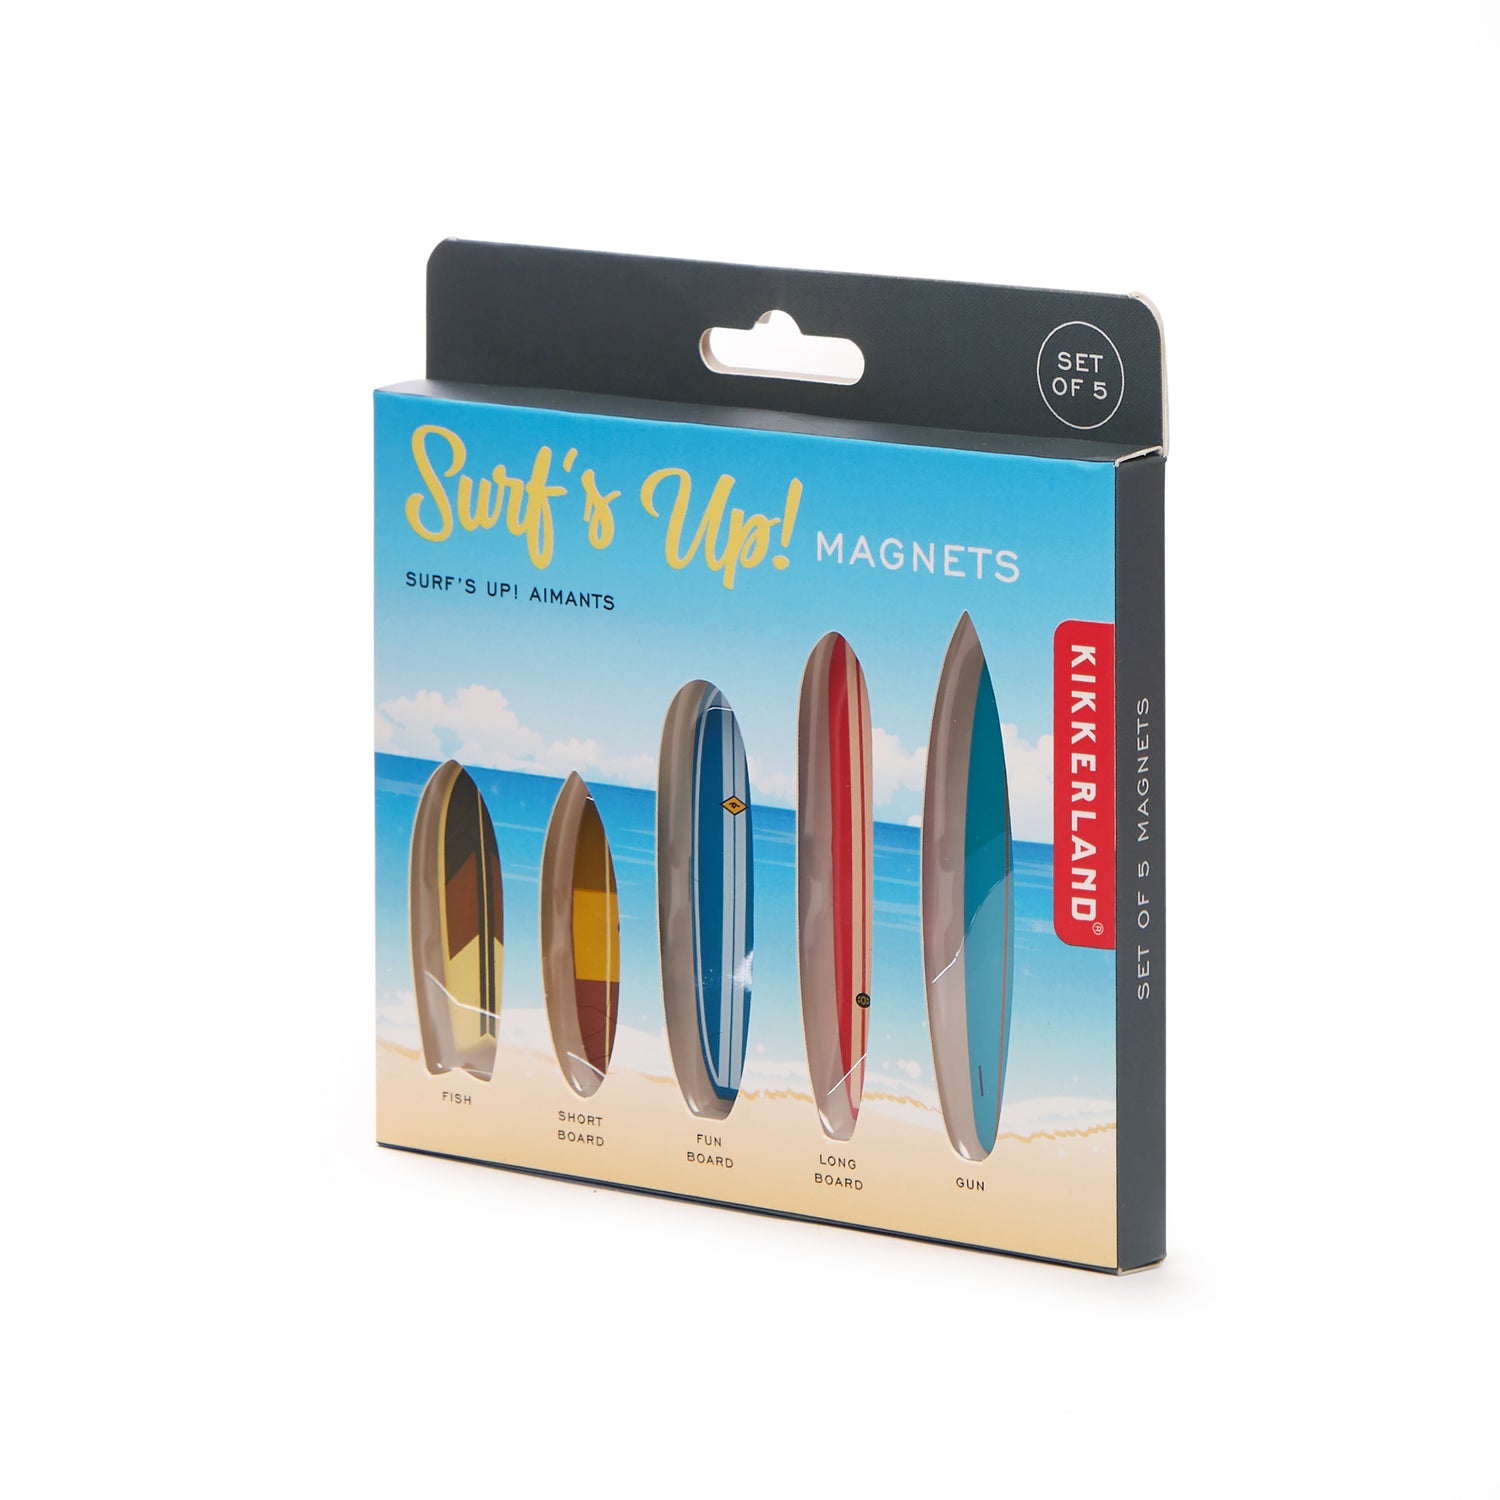 Surf's Up! Magnets